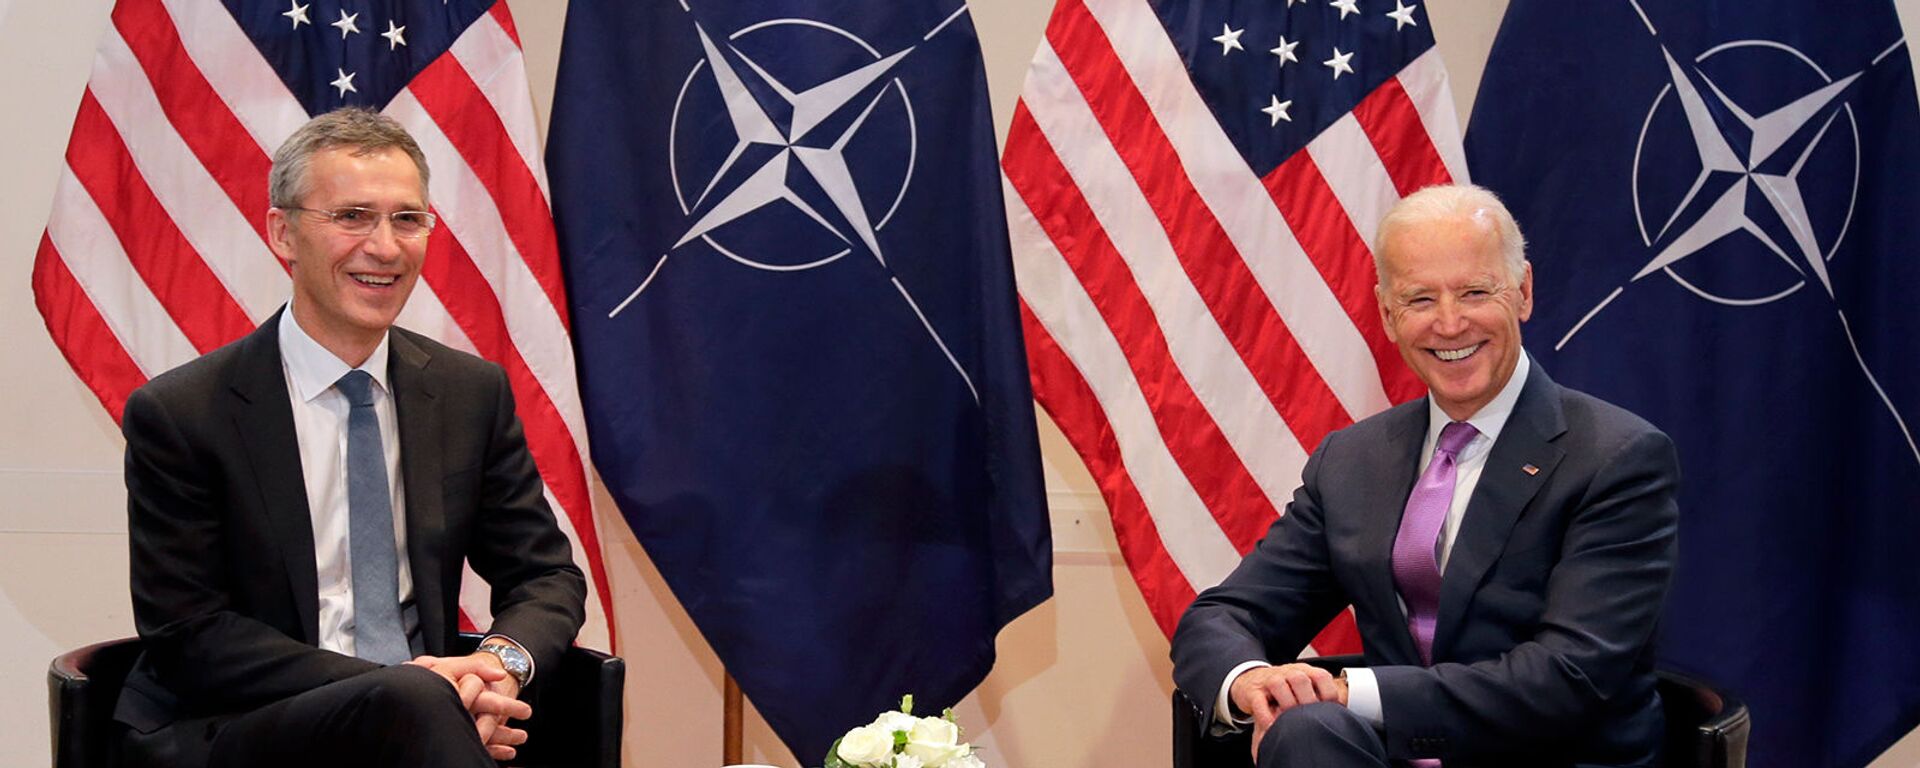 Вице-президент США Джо Байден и Генеральный секретарь НАТО Йенс Столтенберг во время встречи (7 февраля 2015). Мюнхен - Sputnik Արմենիա, 1920, 25.03.2021